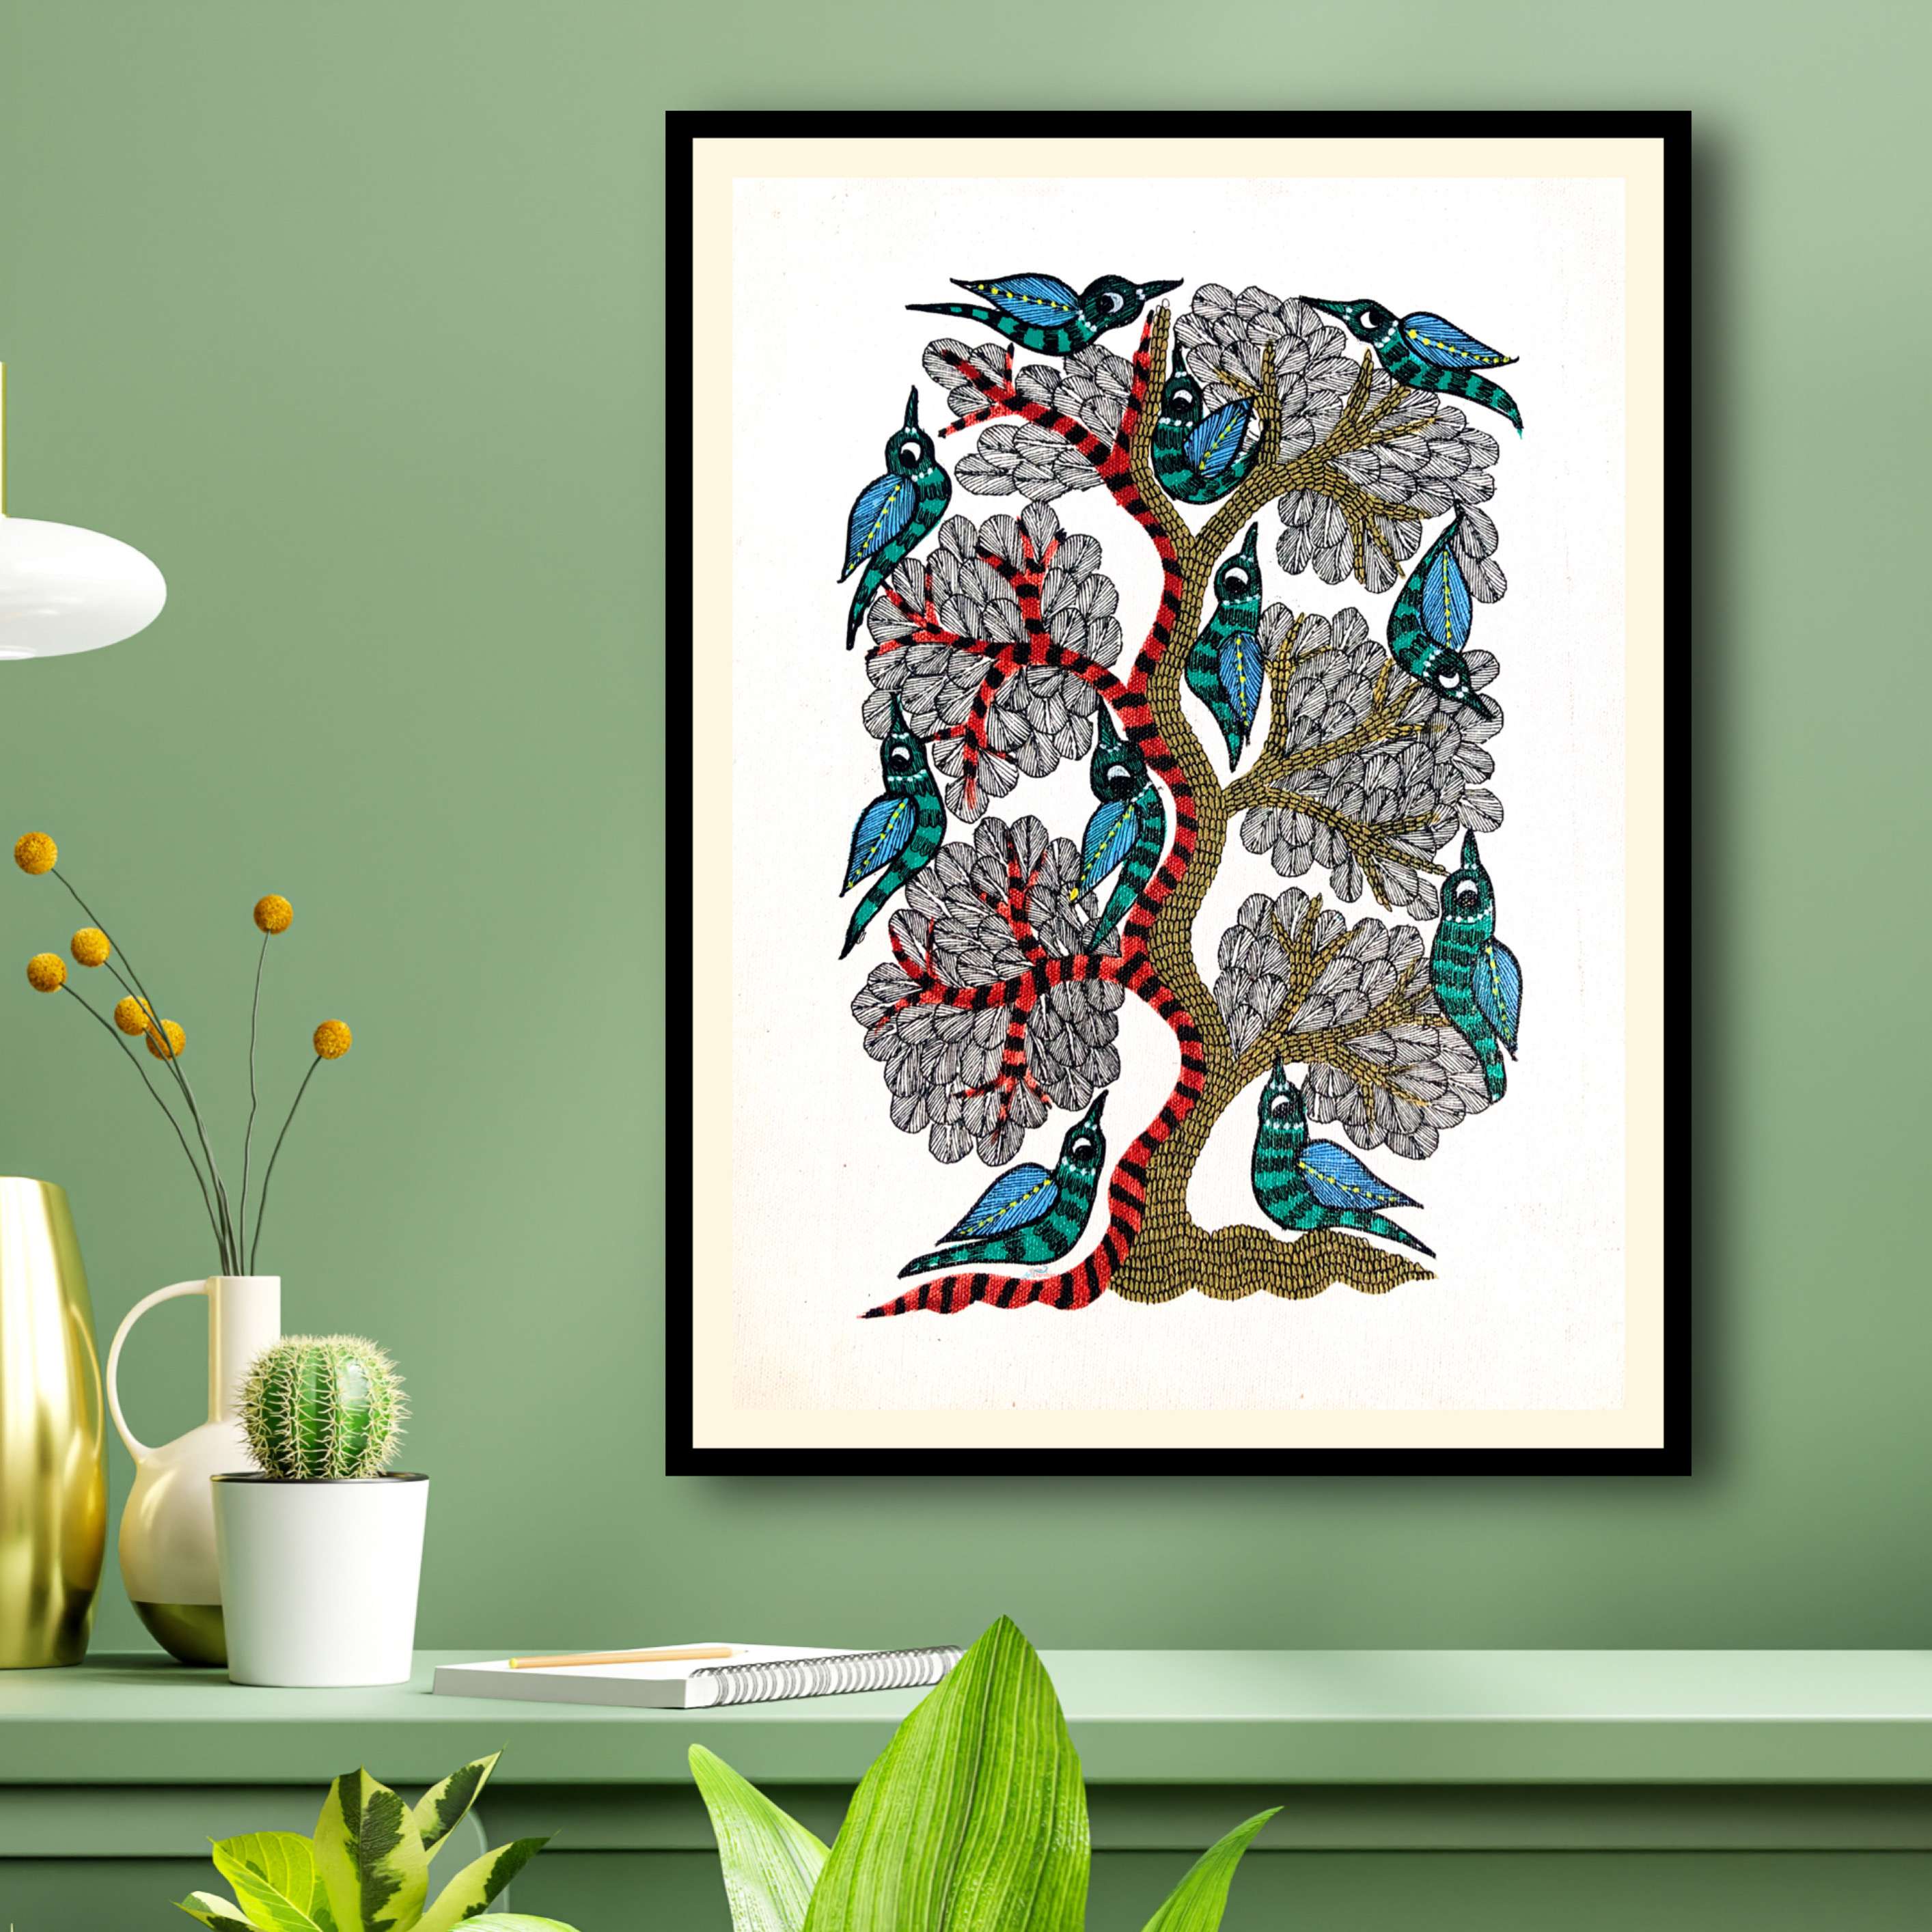 Framed Madhubani painting of Tree & Birds